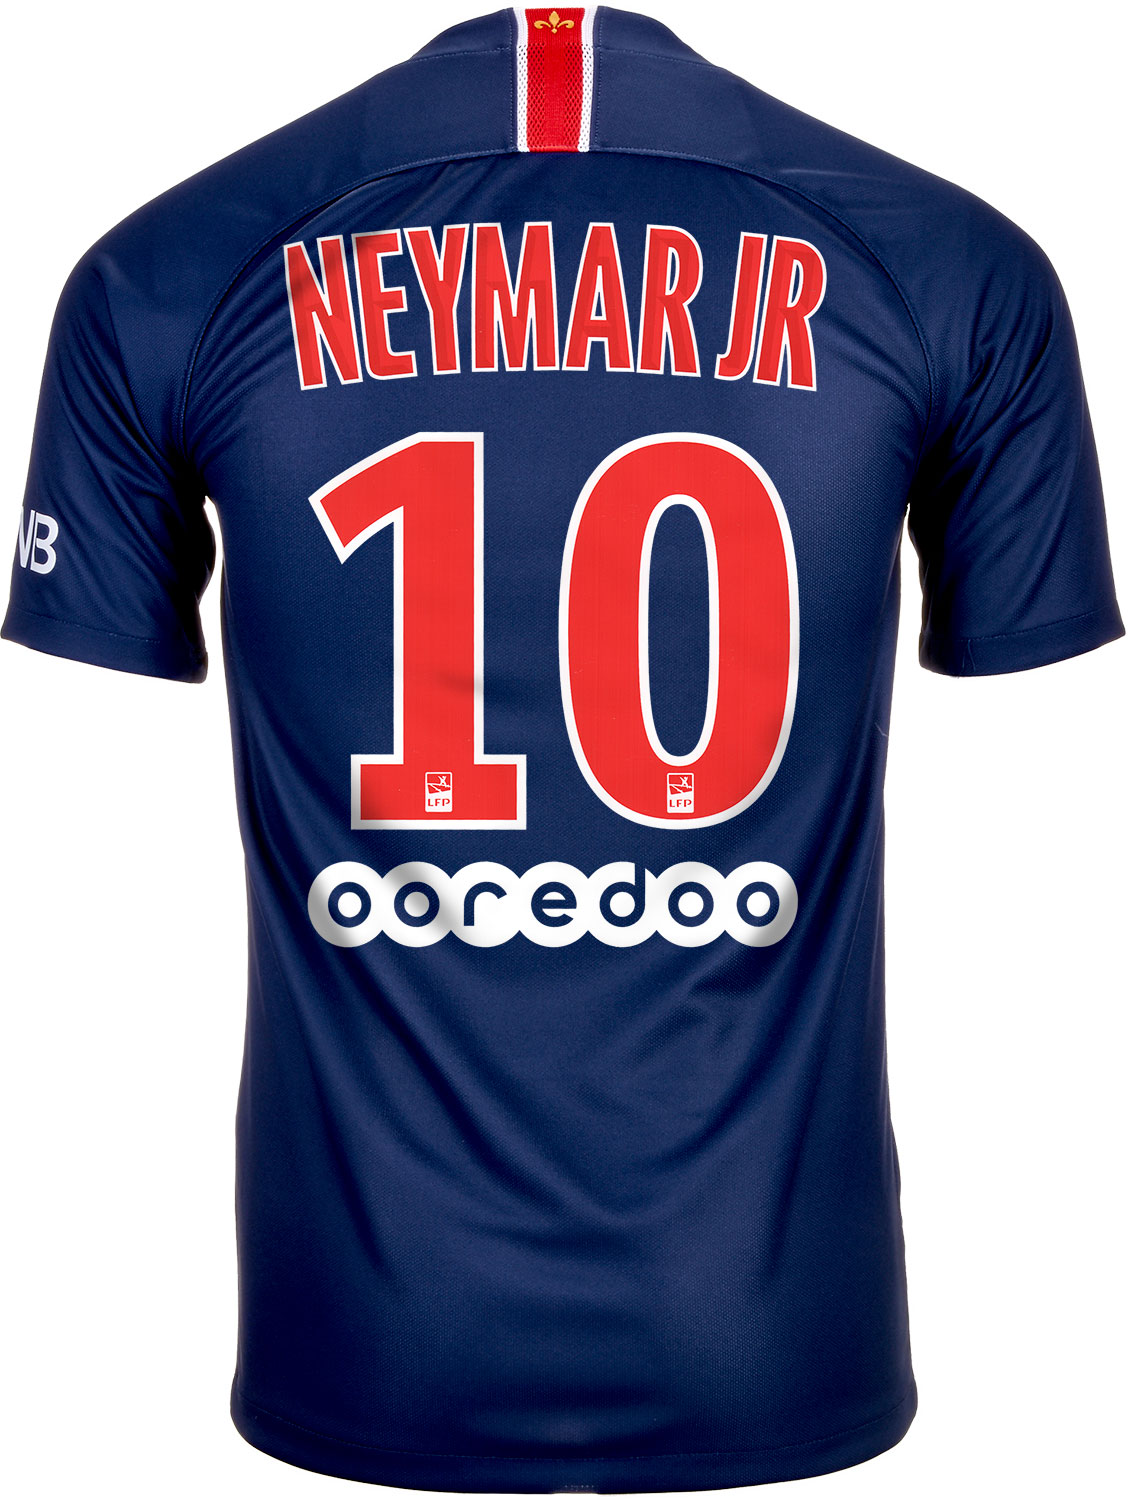 Nike Neymar Jr. PSG Home Jersey 201819  SoccerPro